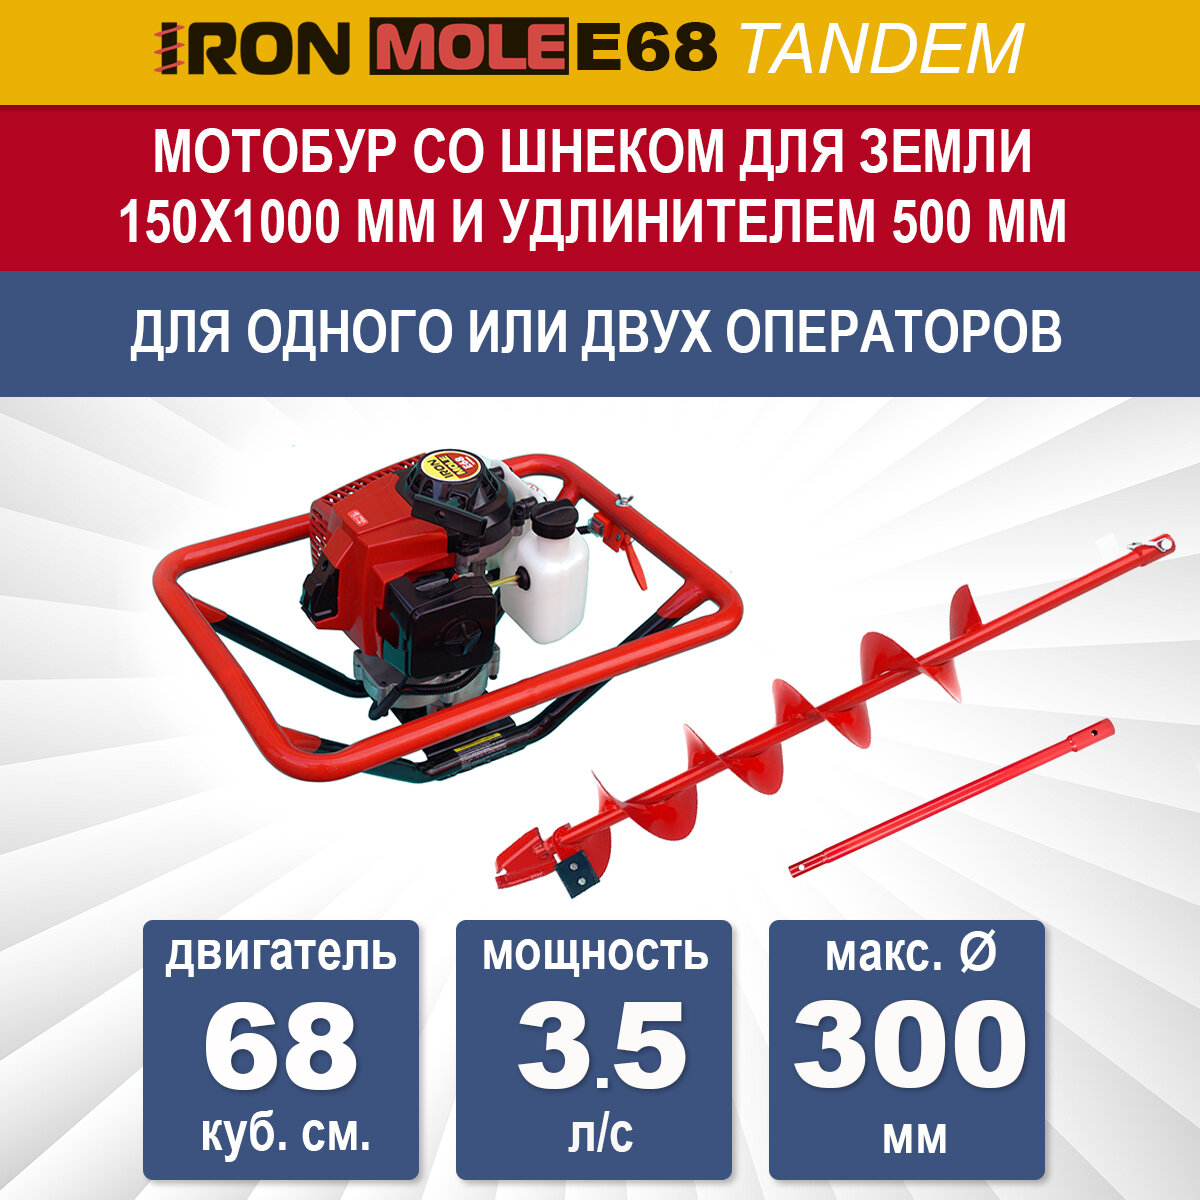 Бензиновый мотобур Iron Mole E68 со шнеком для земли N1 150Х1000 мм и удлинителем 500 мм, мощность 3.5 л/с, макс. диаметр 300 мм